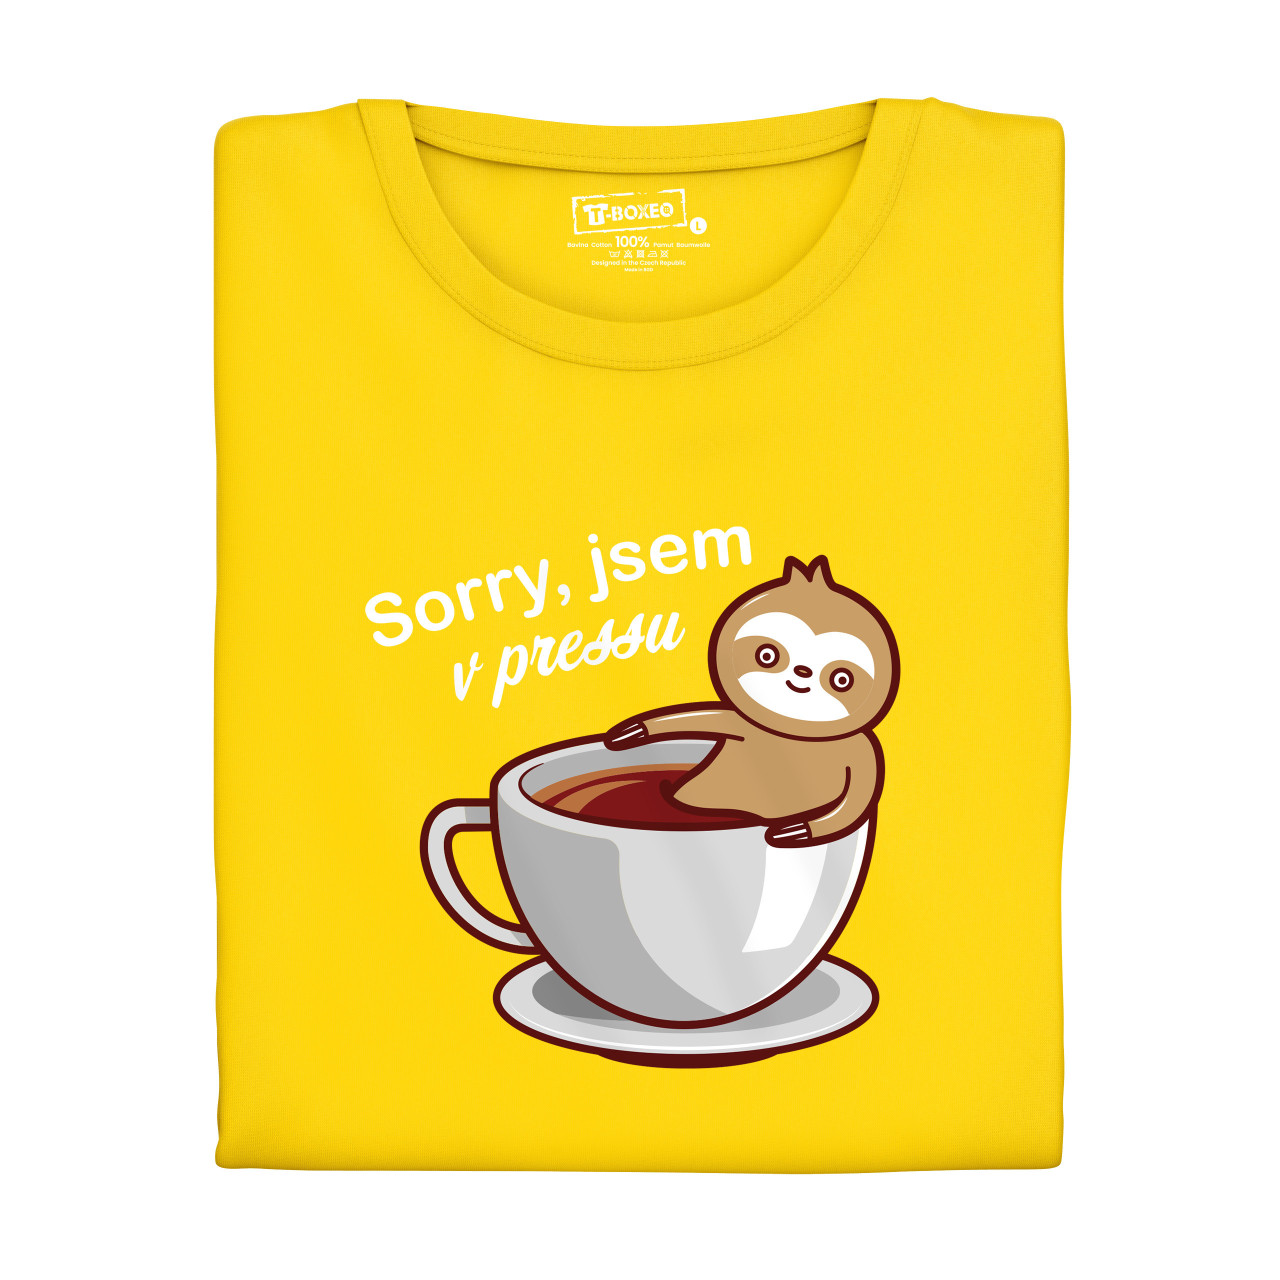 Dámské tričko s potiskem “Sorry, jsem v pressu”